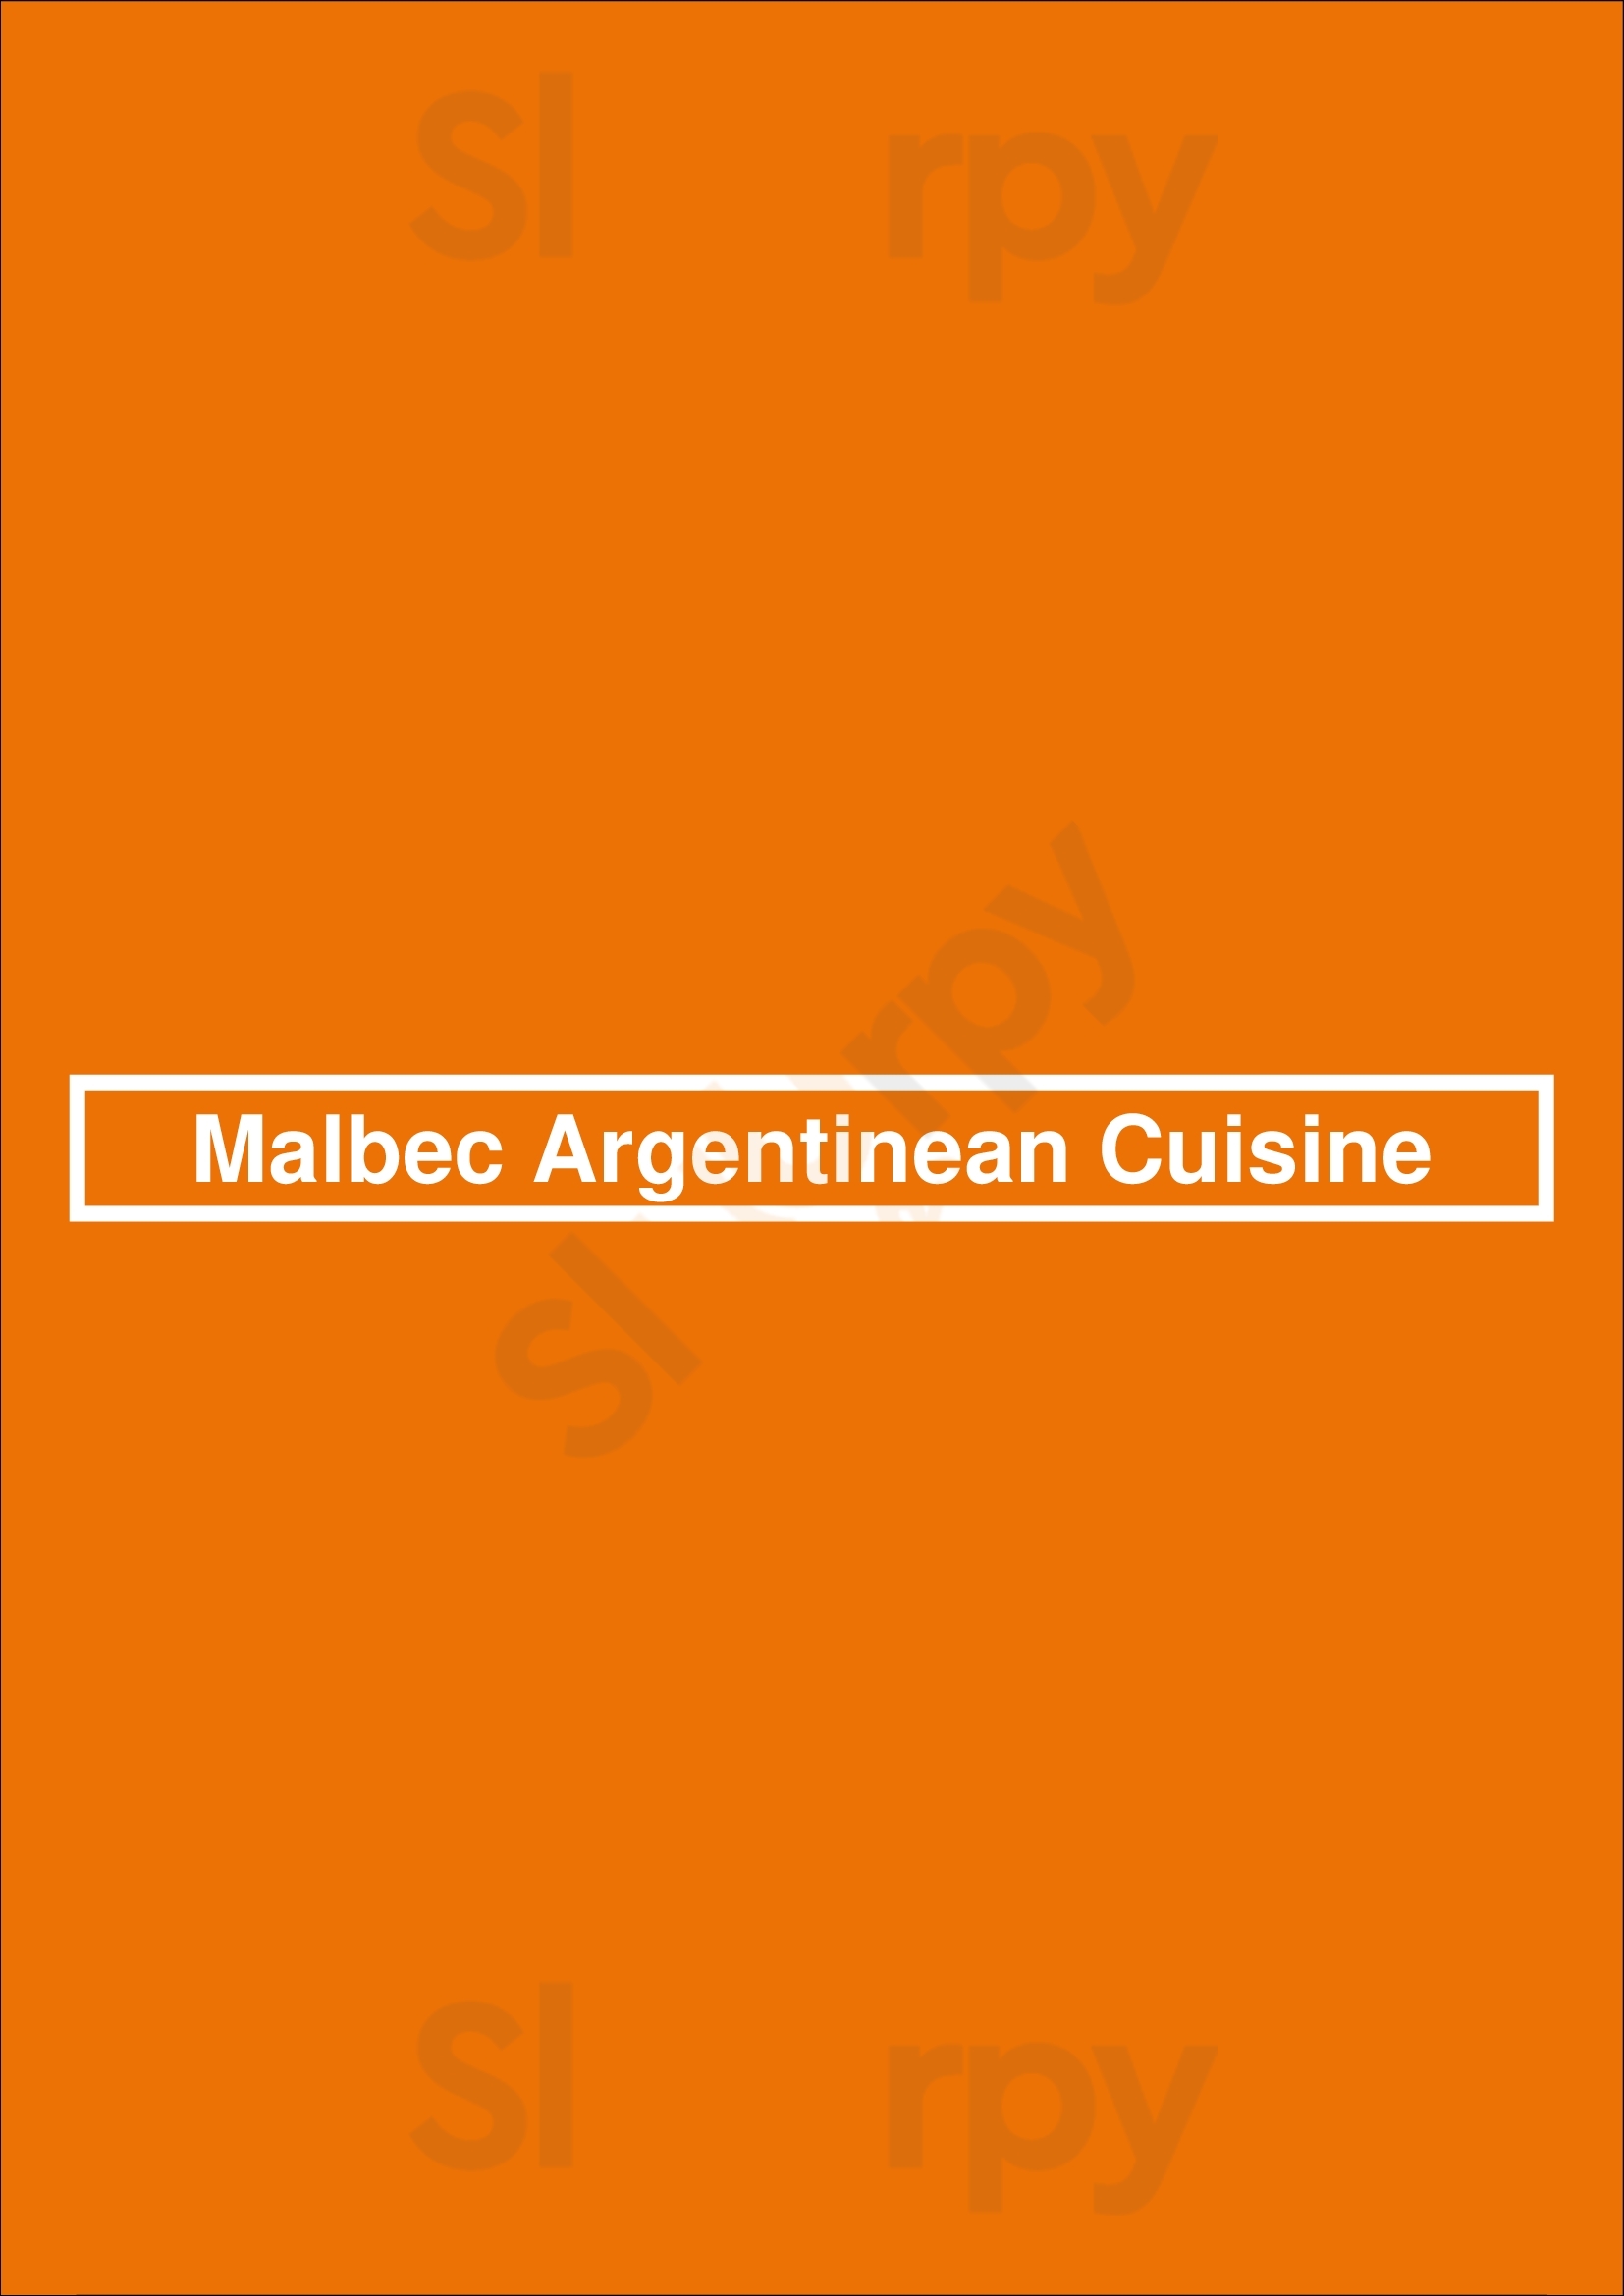 Malbec Argentinean Cuisine Los Angeles Menu - 1